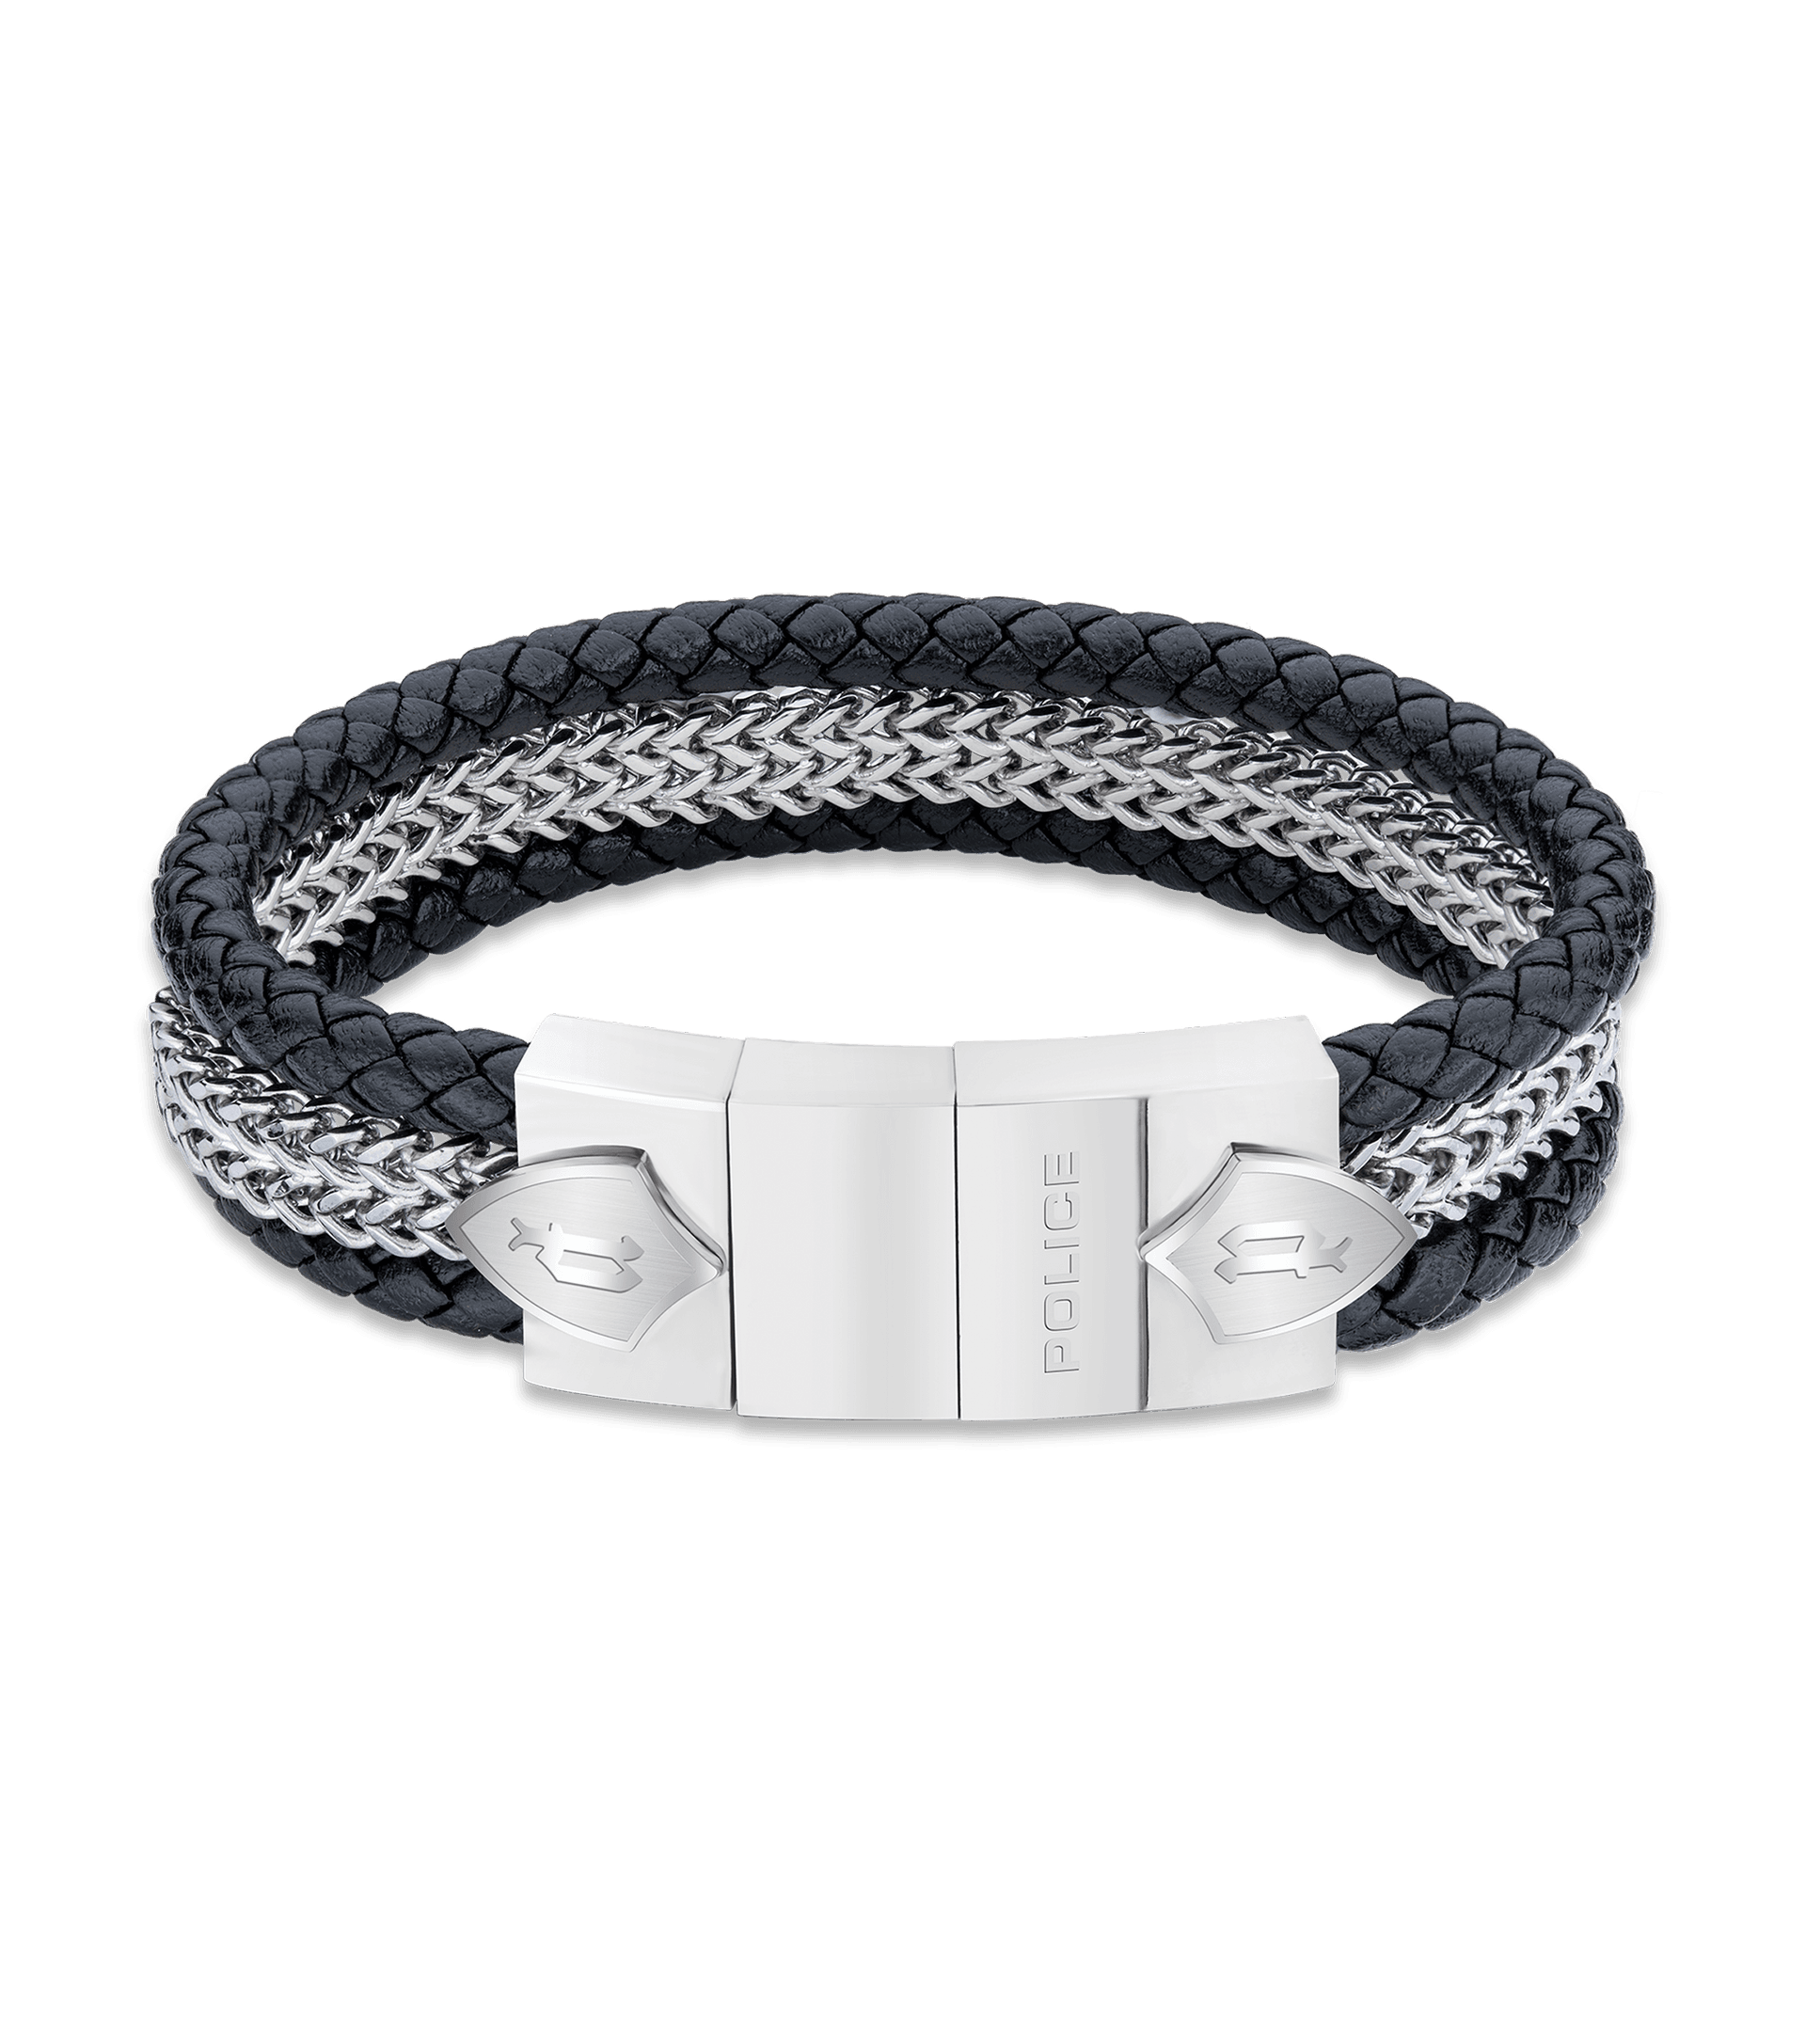 Buy Darkened Silver Stainless Steel Winged Skeleton Biker Bracelet Online -  Inox Jewelry India